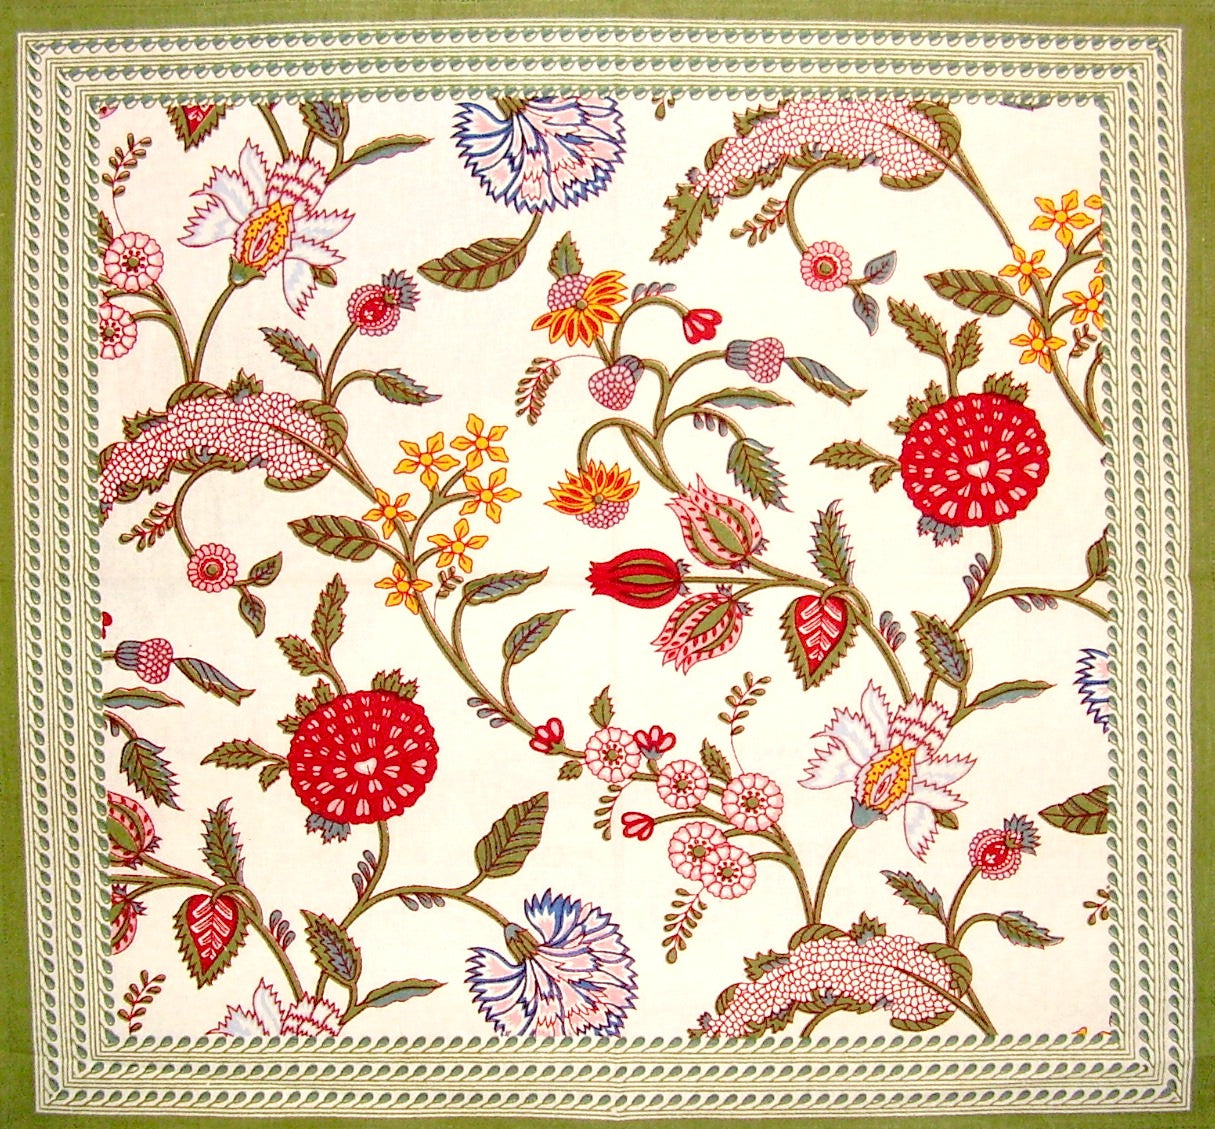 ผ้าเช็ดปากผ้าฝ้ายลายดอกไม้ Floral Berry 18" x 18" คละสี